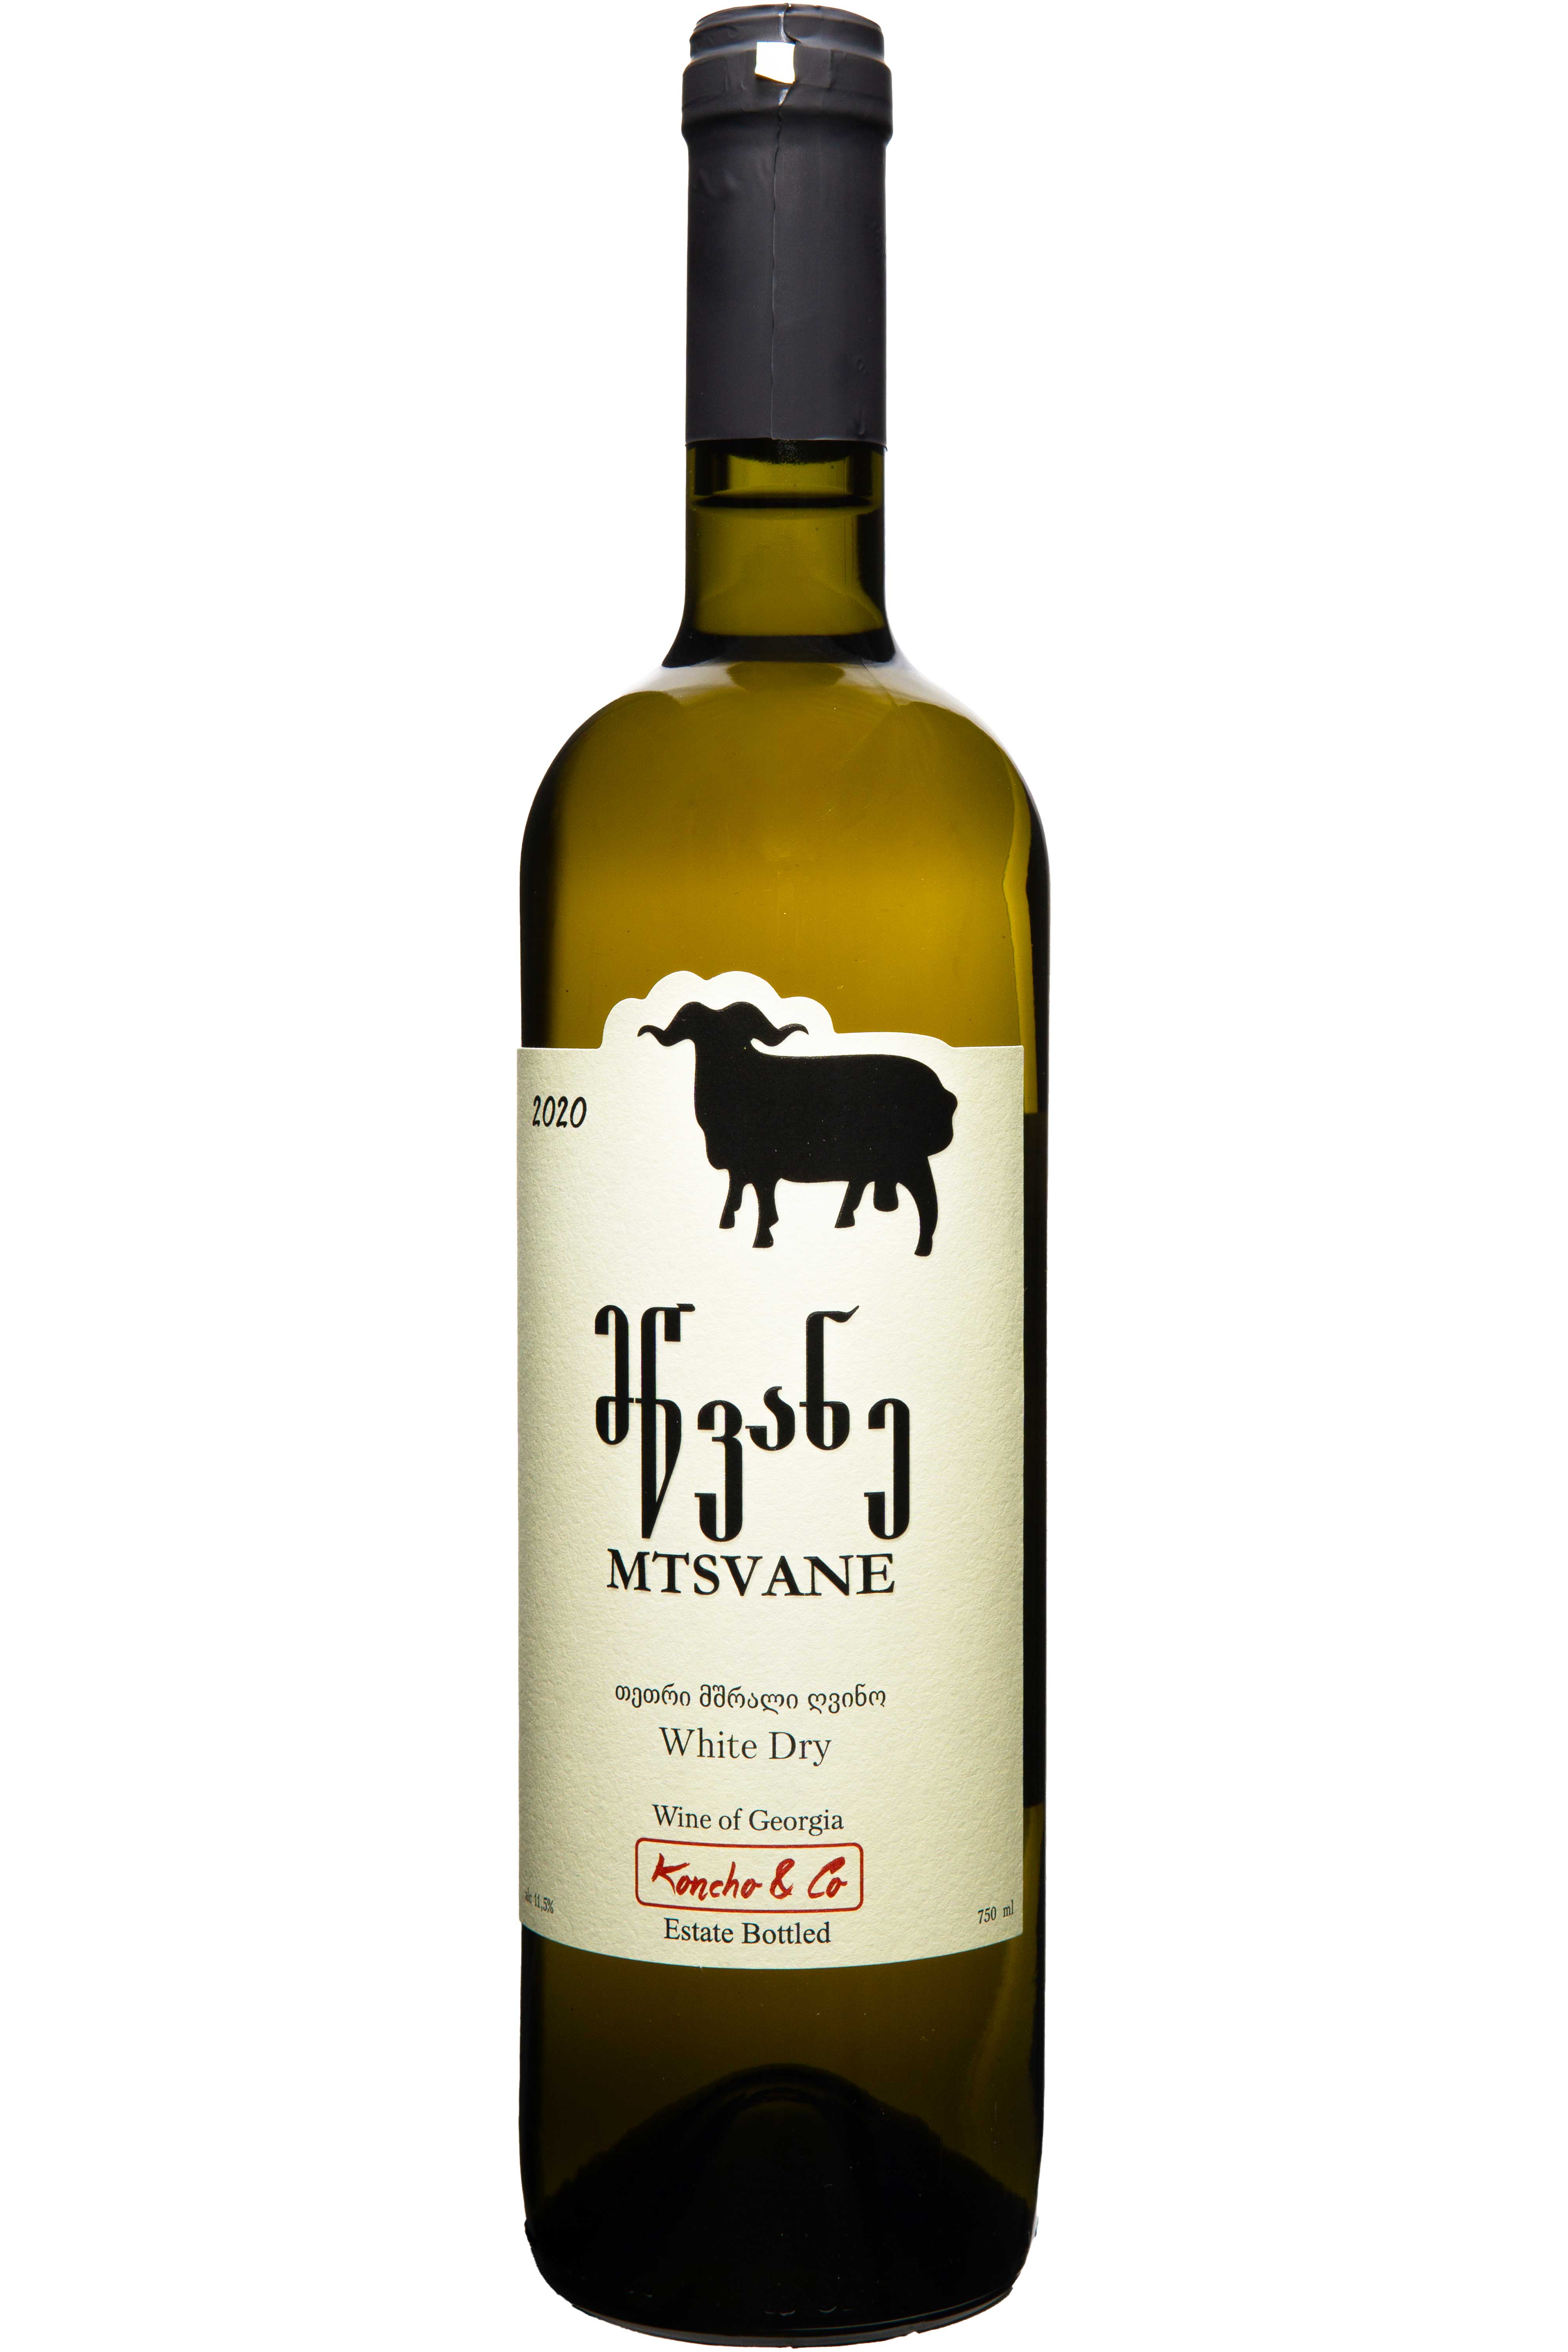 Flasche Koncho & Co. Mtsvane 2020, trockener Weißwein, feine georgische Weinherstellung mit klarer, frischer Geschmacksnote.